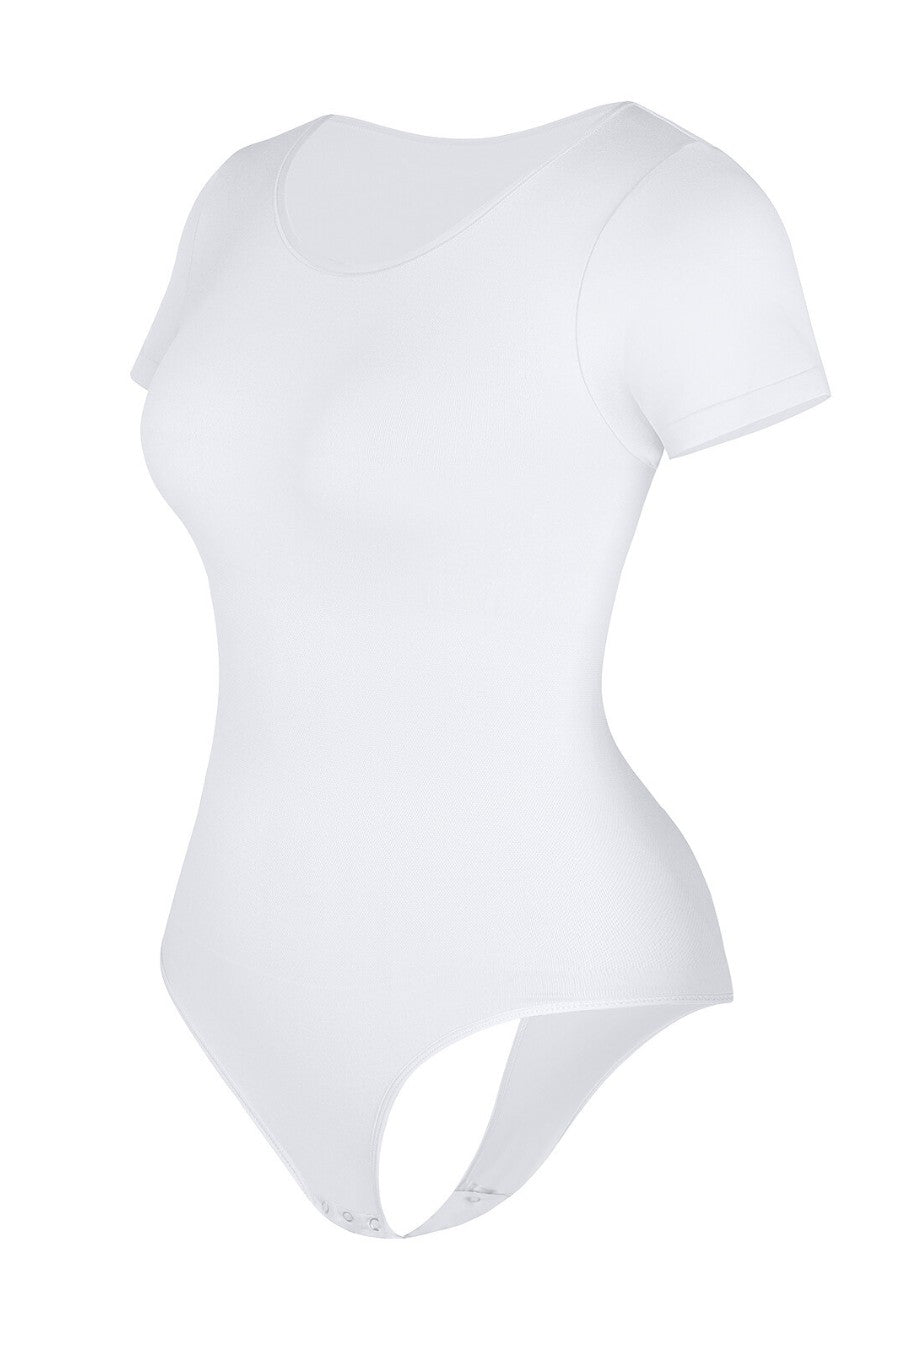 Emma Shaping Bodysuit - White Contour Clothing